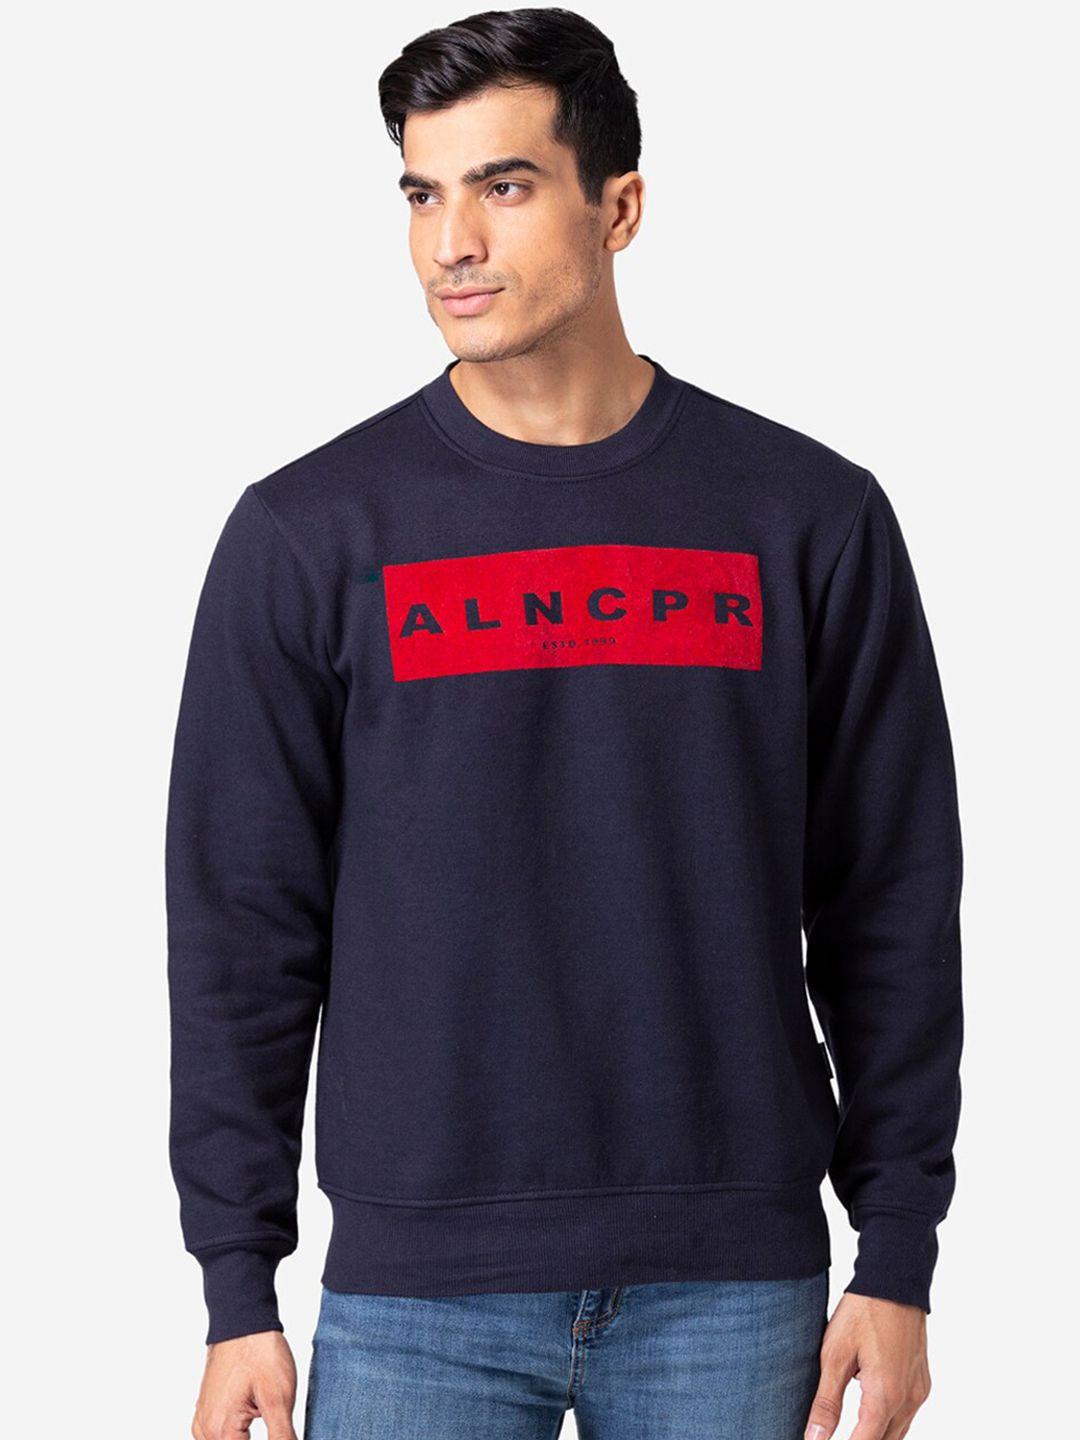 allen-cooper-men-navy-blue-printed-cotton-sweatshirt